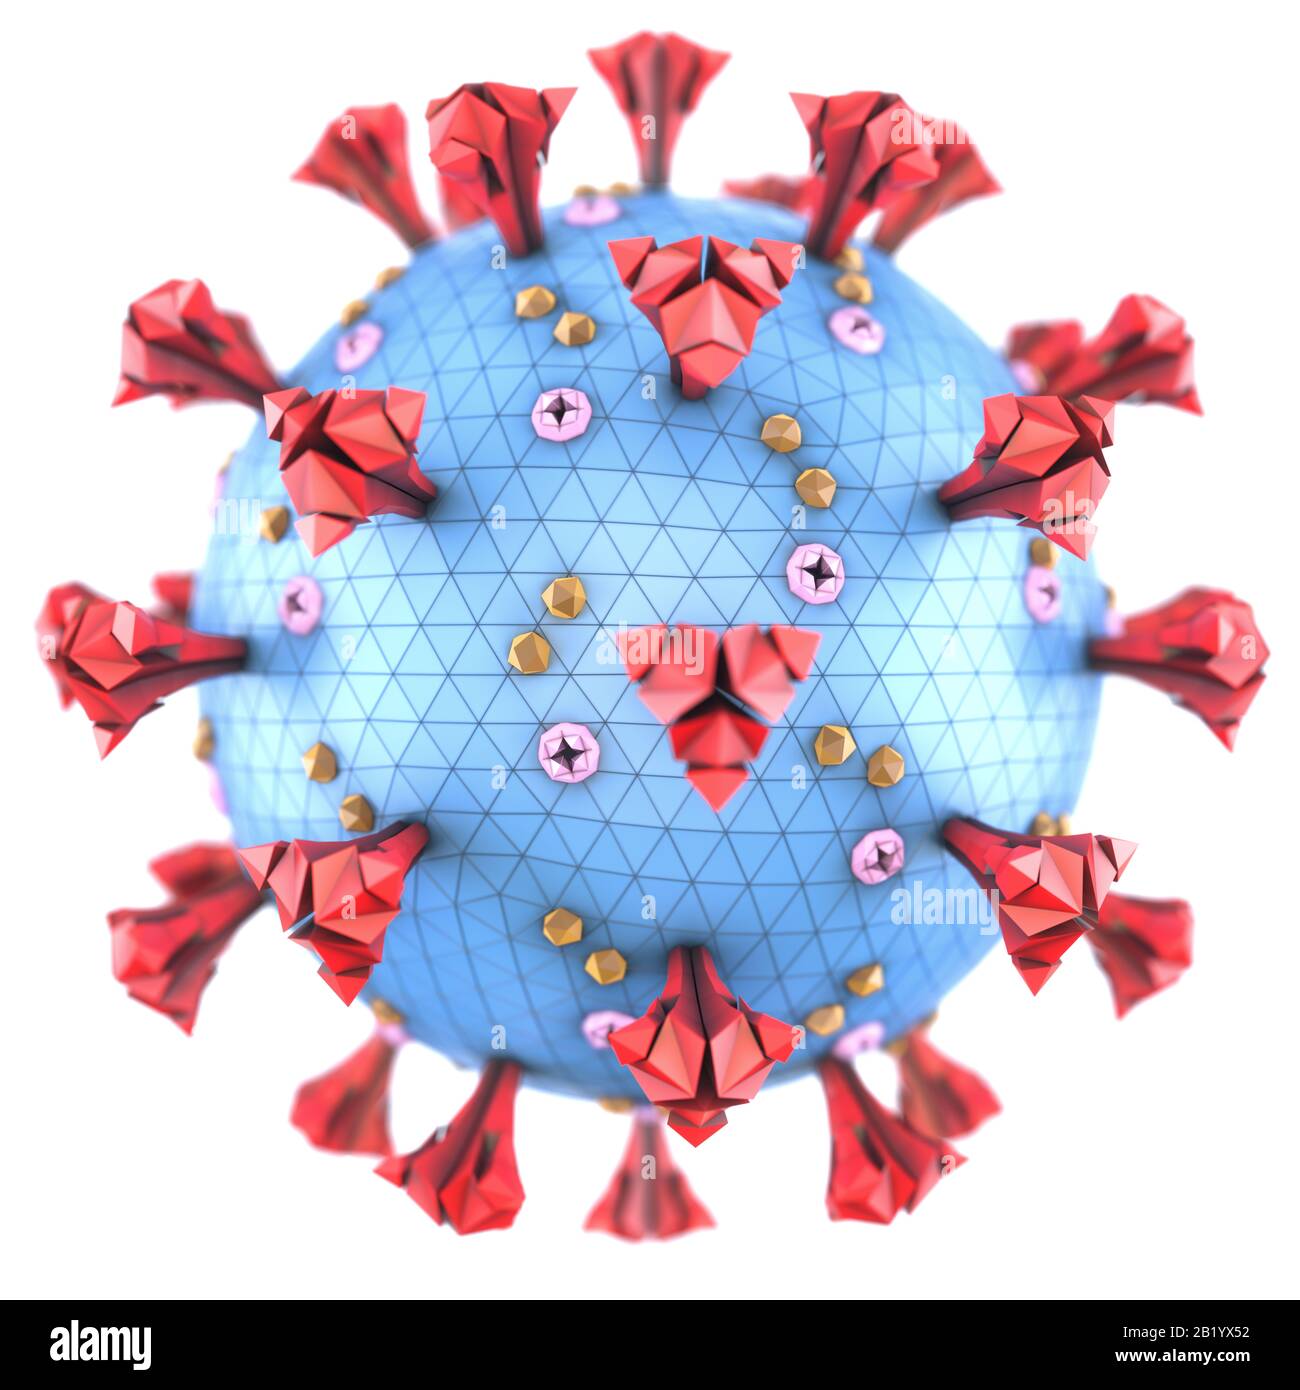 Covid-19, Coronavirus, eine Gruppe von Viren, die Krankheiten bei Säugetieren und Vögeln verursachen. Beim Menschen verursacht das Virus Atemwegsinfektionen. 3D-Abbildung. Stockfoto